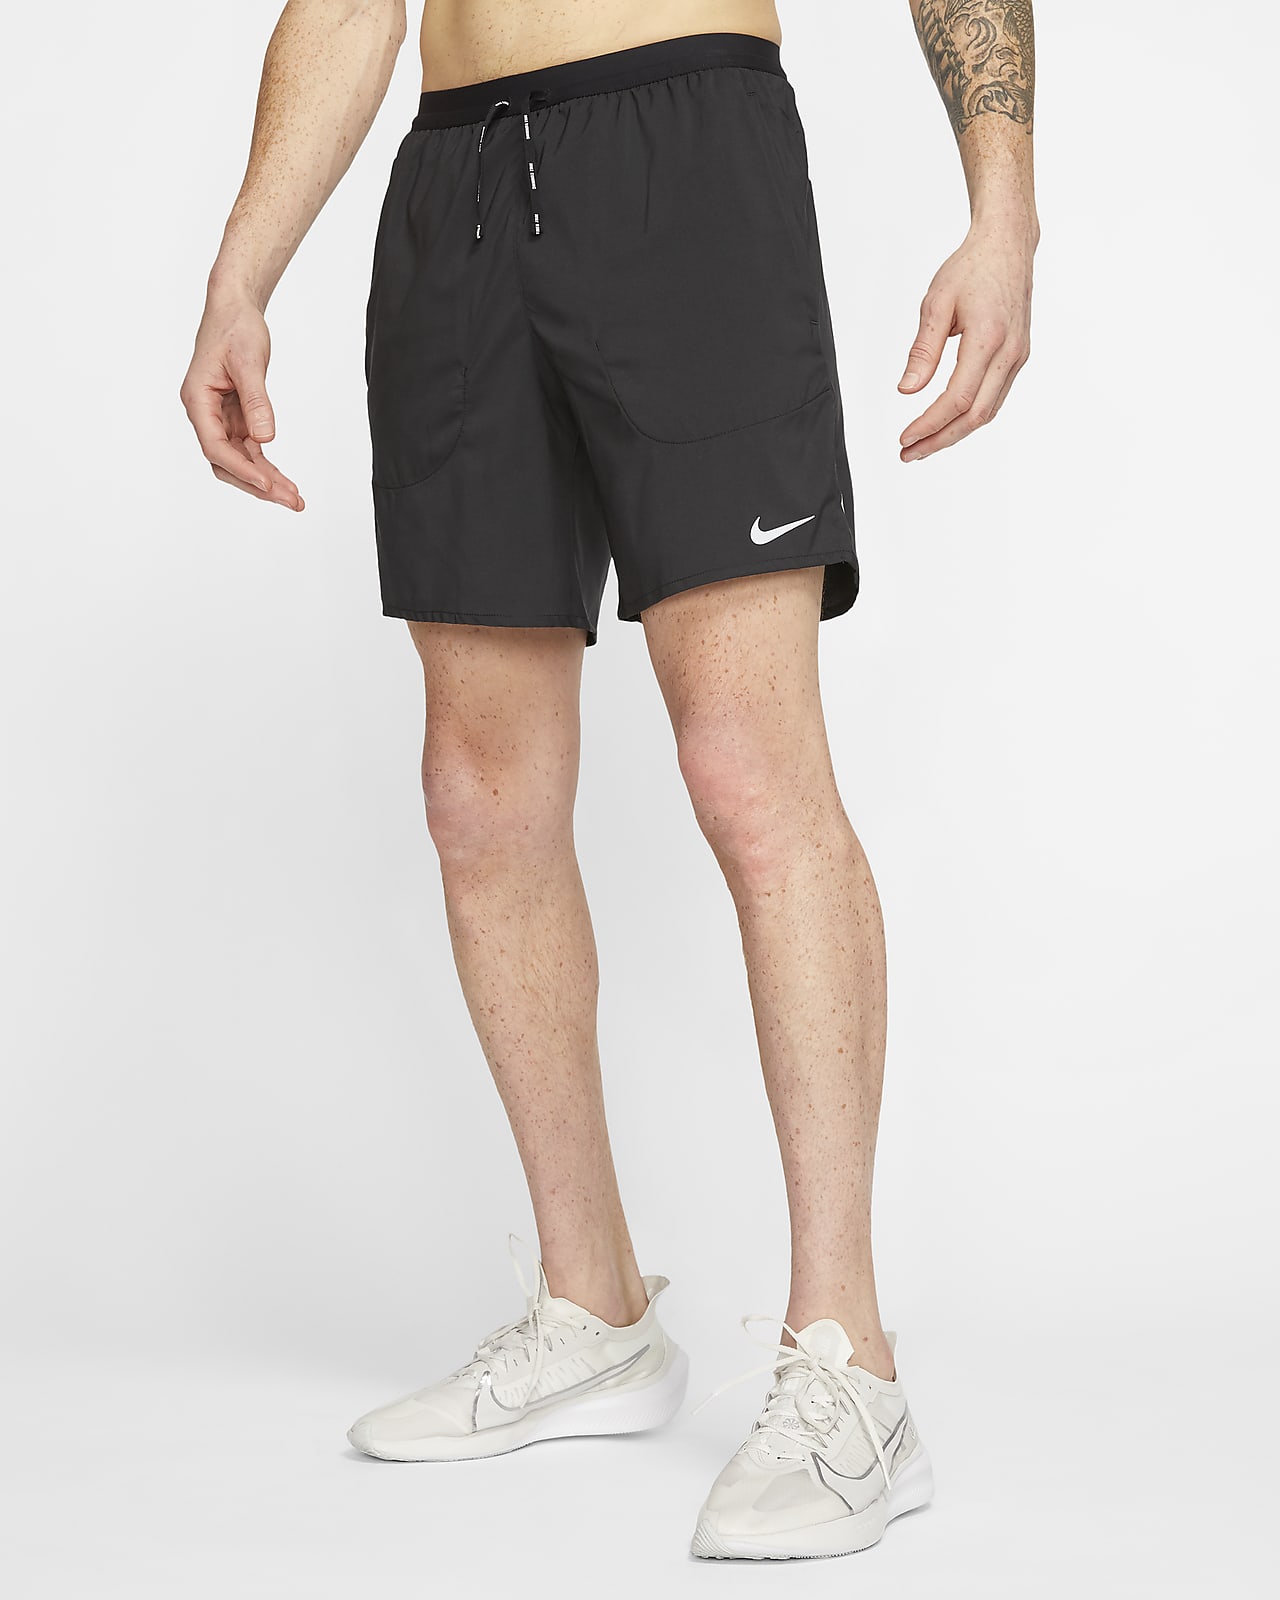 A menudo hablado Labor olvidar Shorts de running con ropa interior de 18 cm para hombre Nike Flex Stride.  Nike.com